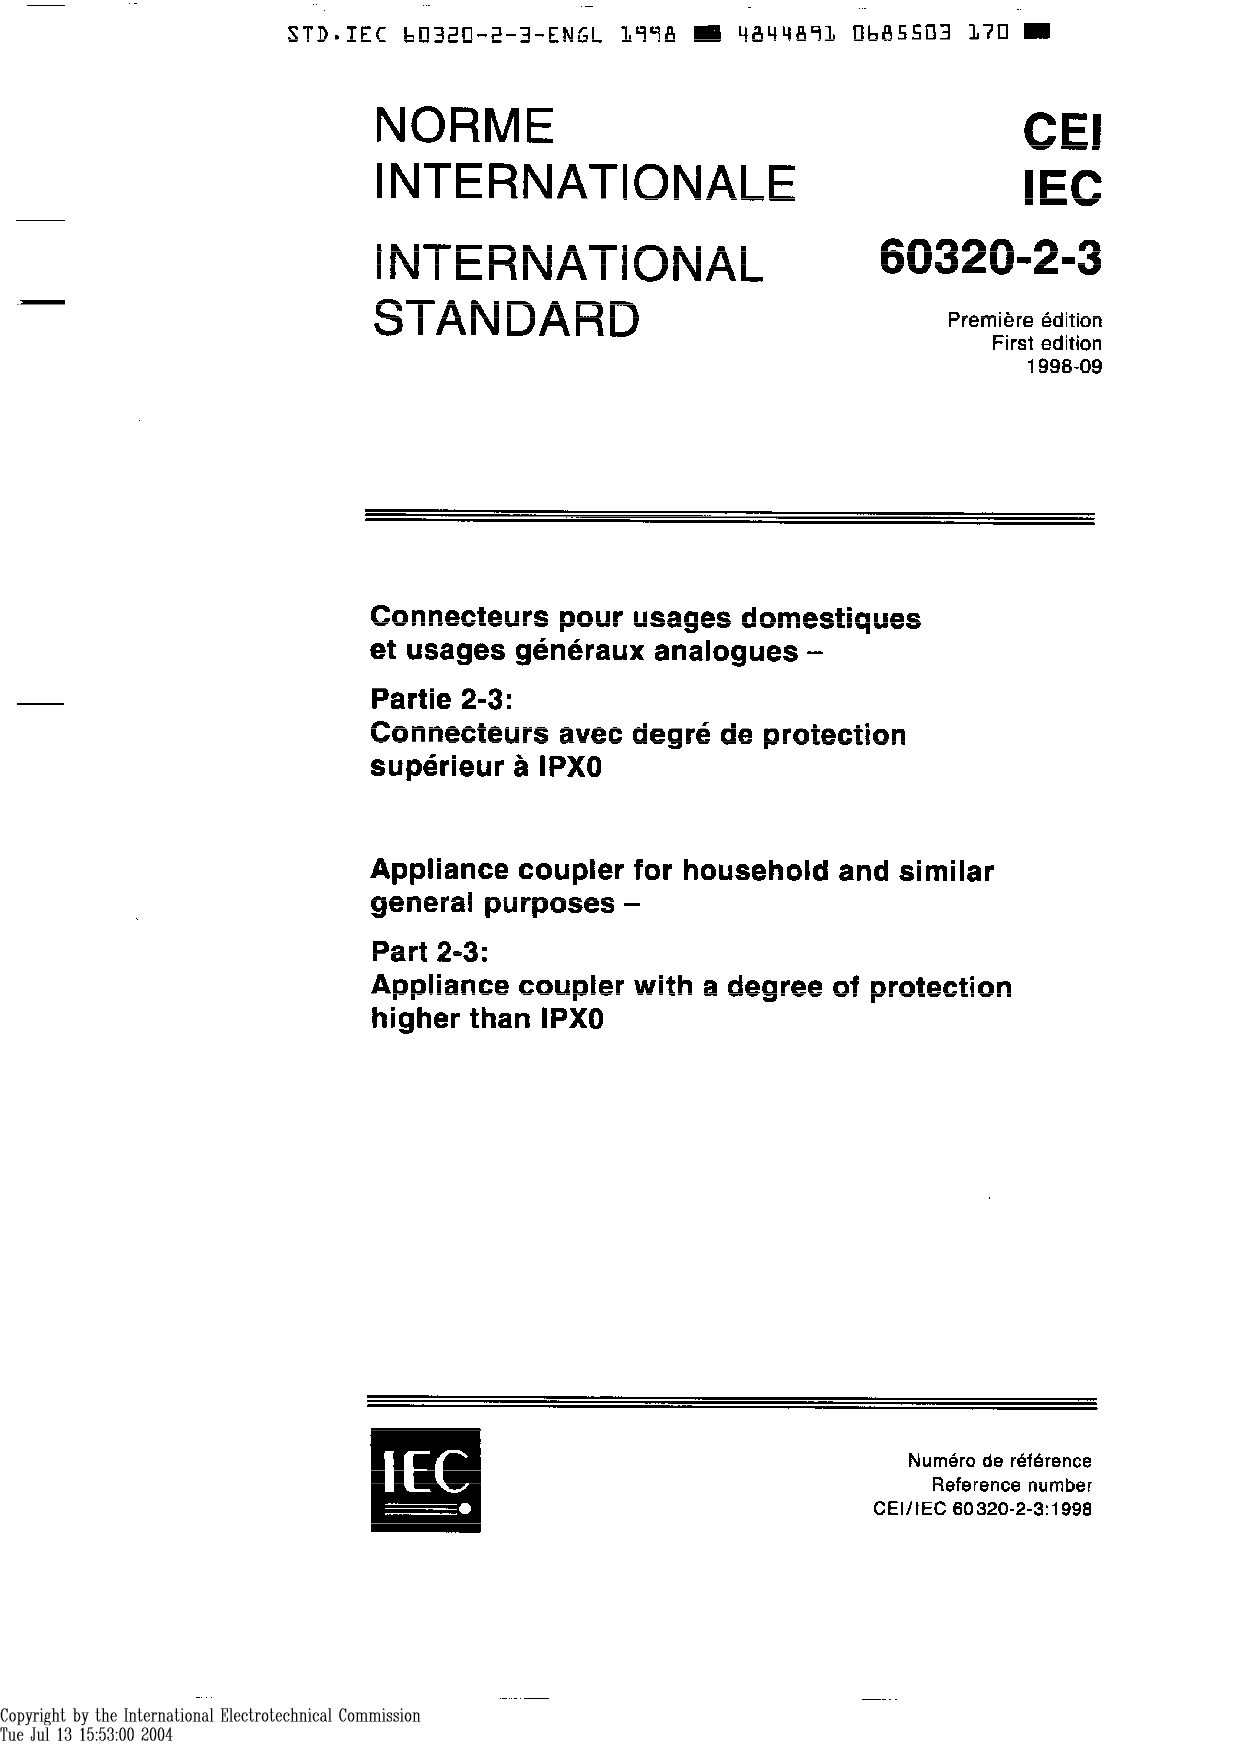 IEC 60320-2-3-1998